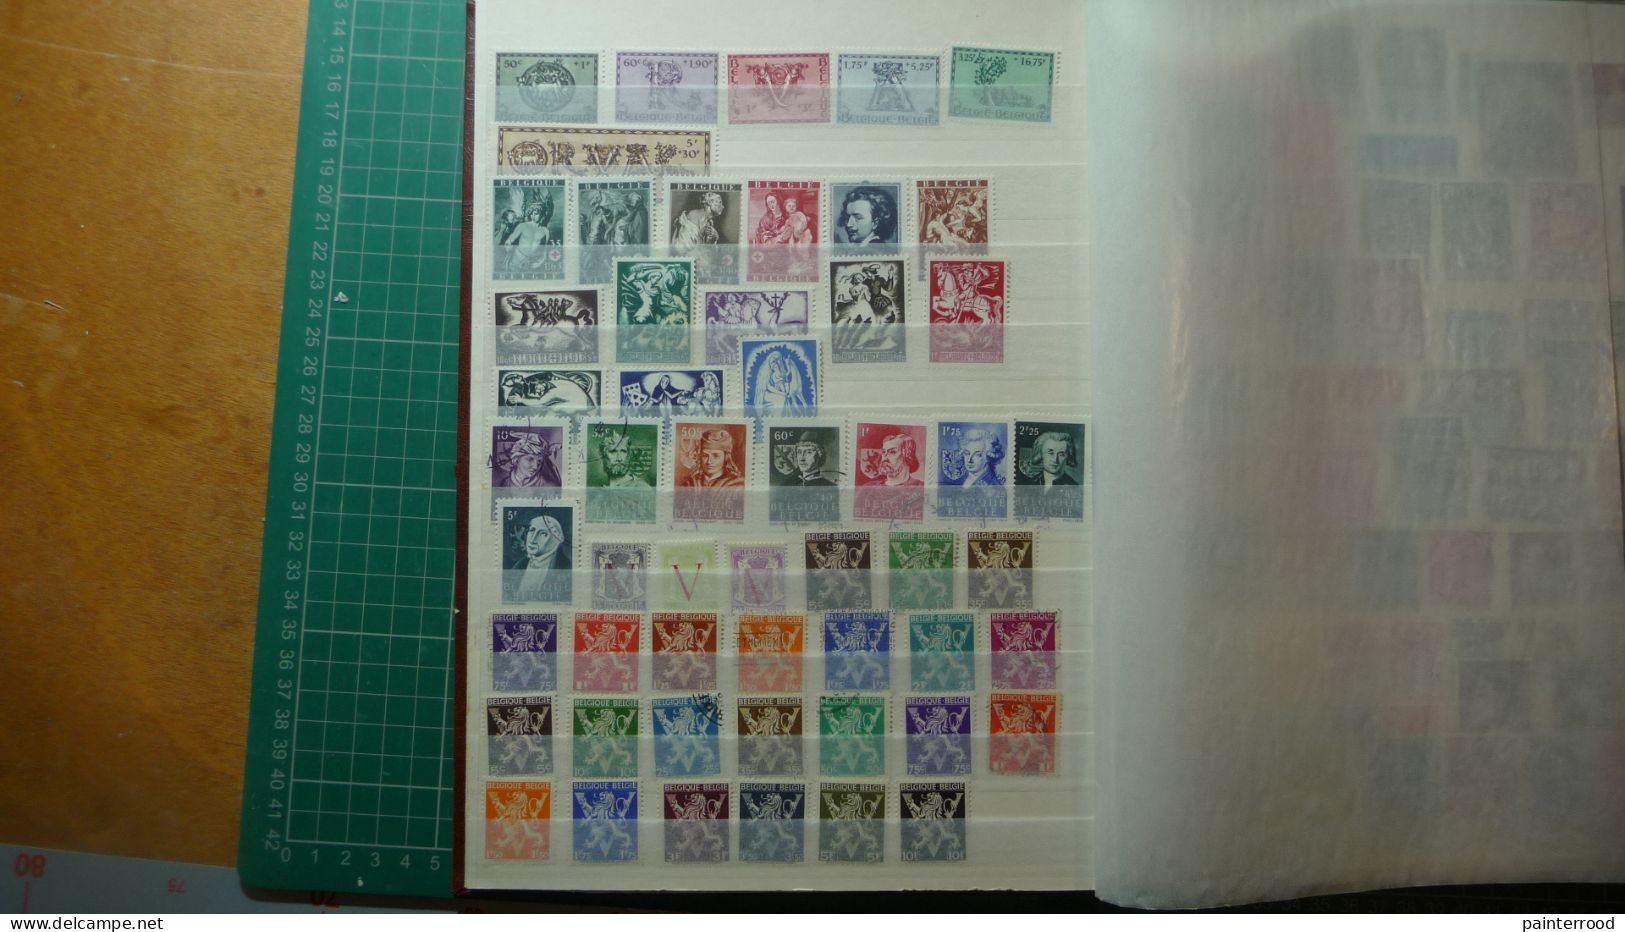 Album postzegels België 1954 - 1984 ongeveer een 800-tal zegels met enige voorgefrankeerde postkaarten icl. Congo